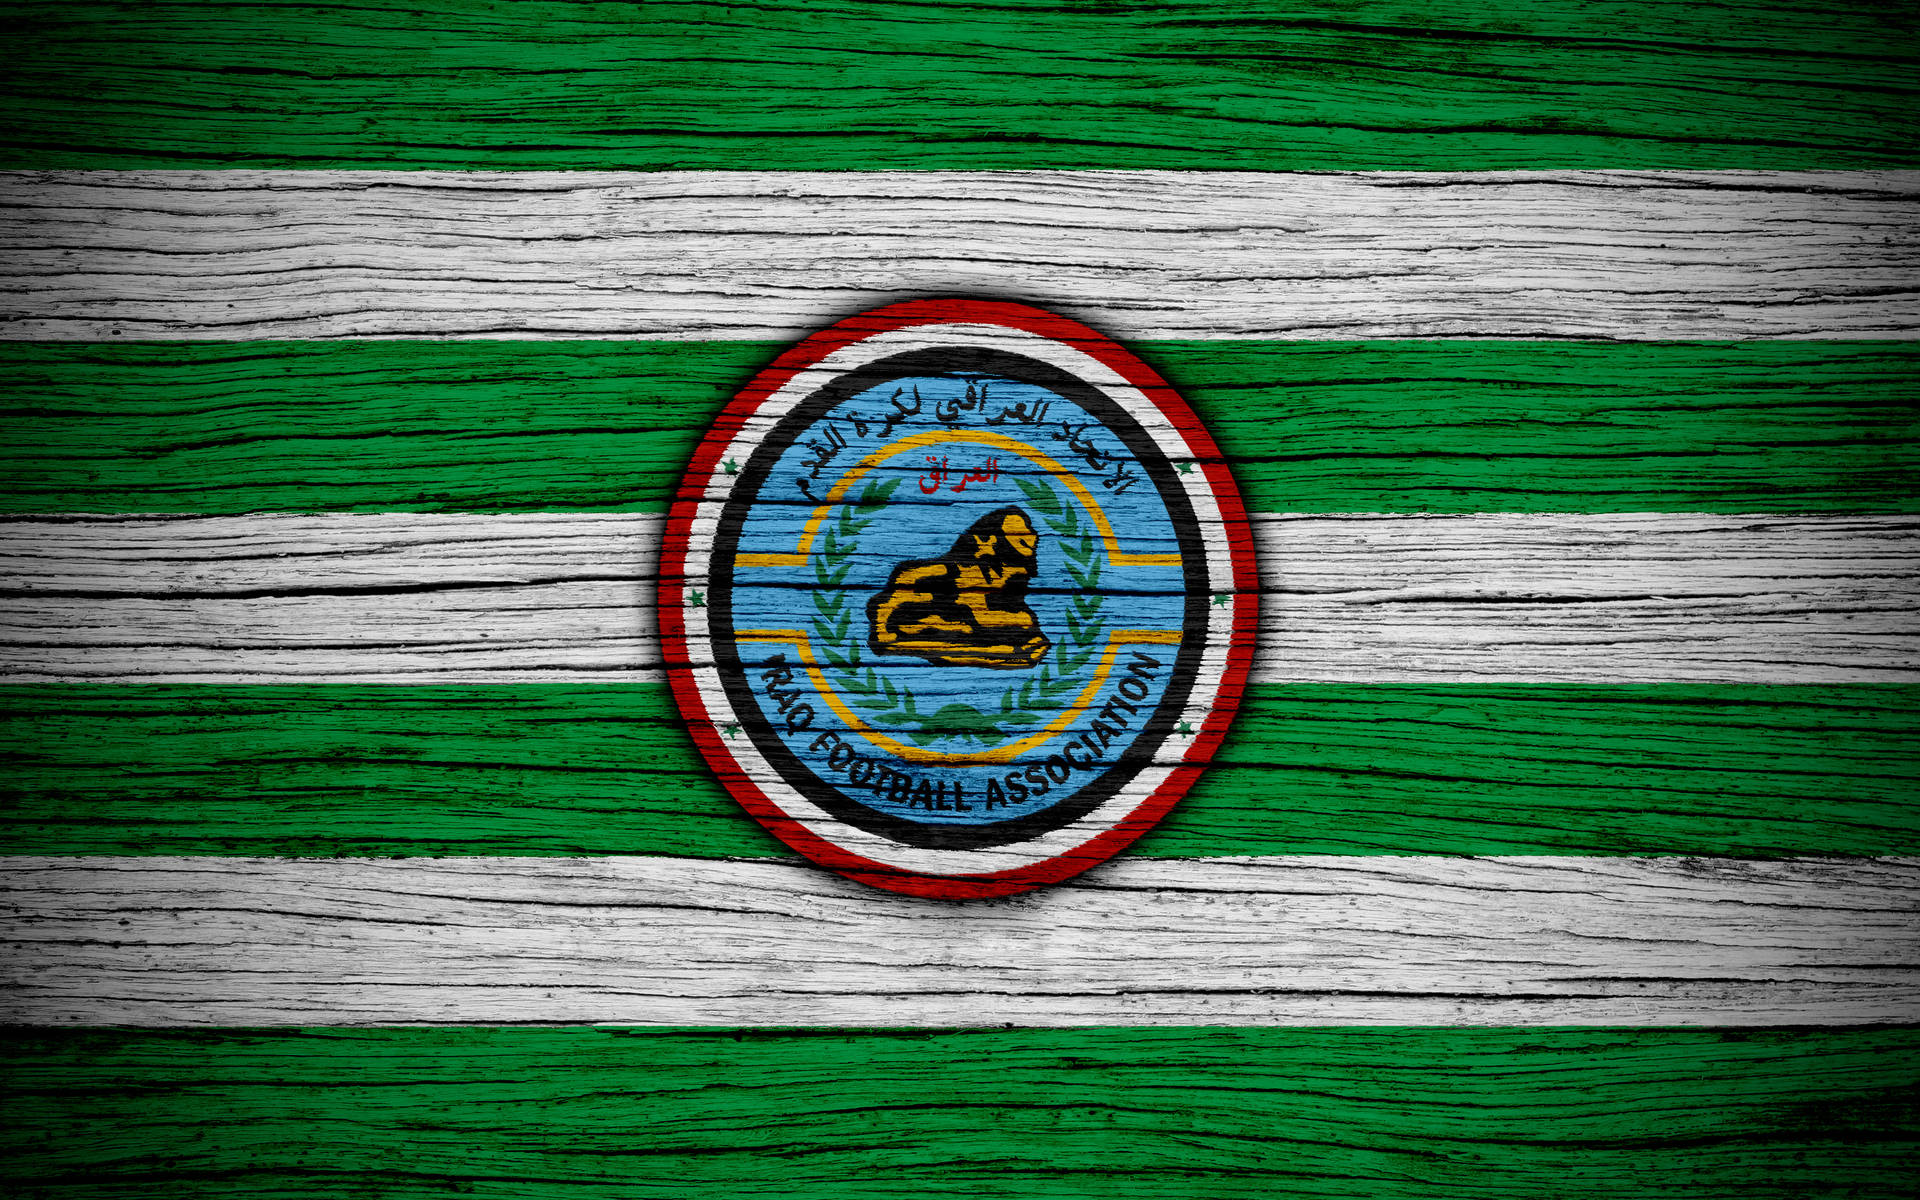 Iraq Football Association Stripes